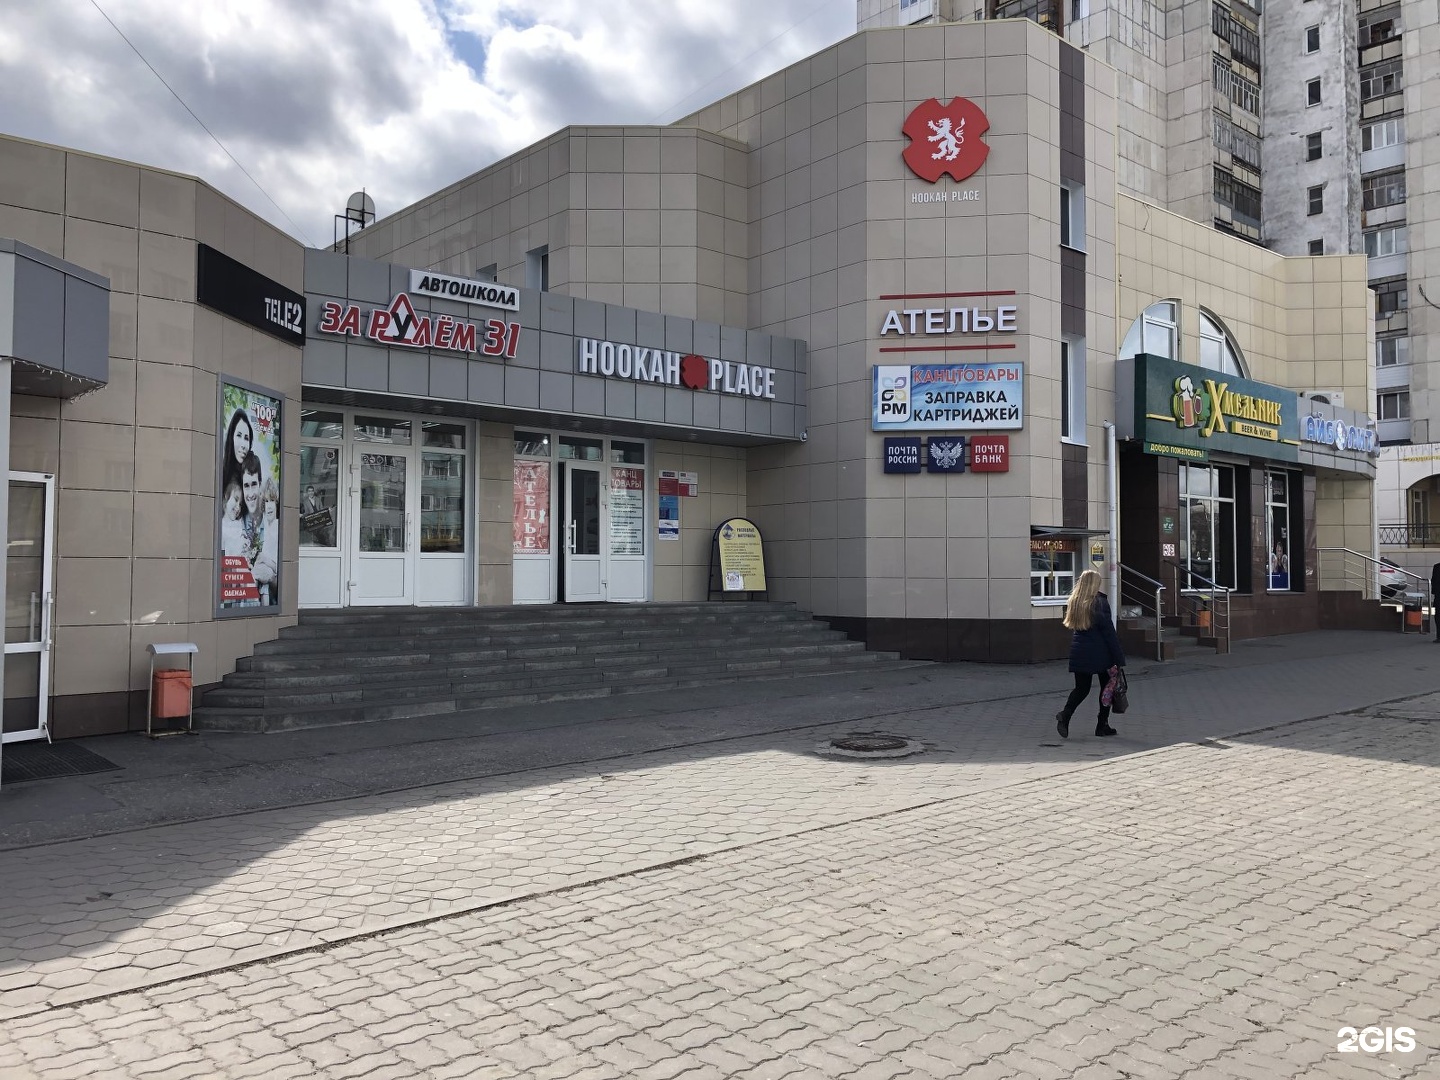 Белгород Магазин Банки